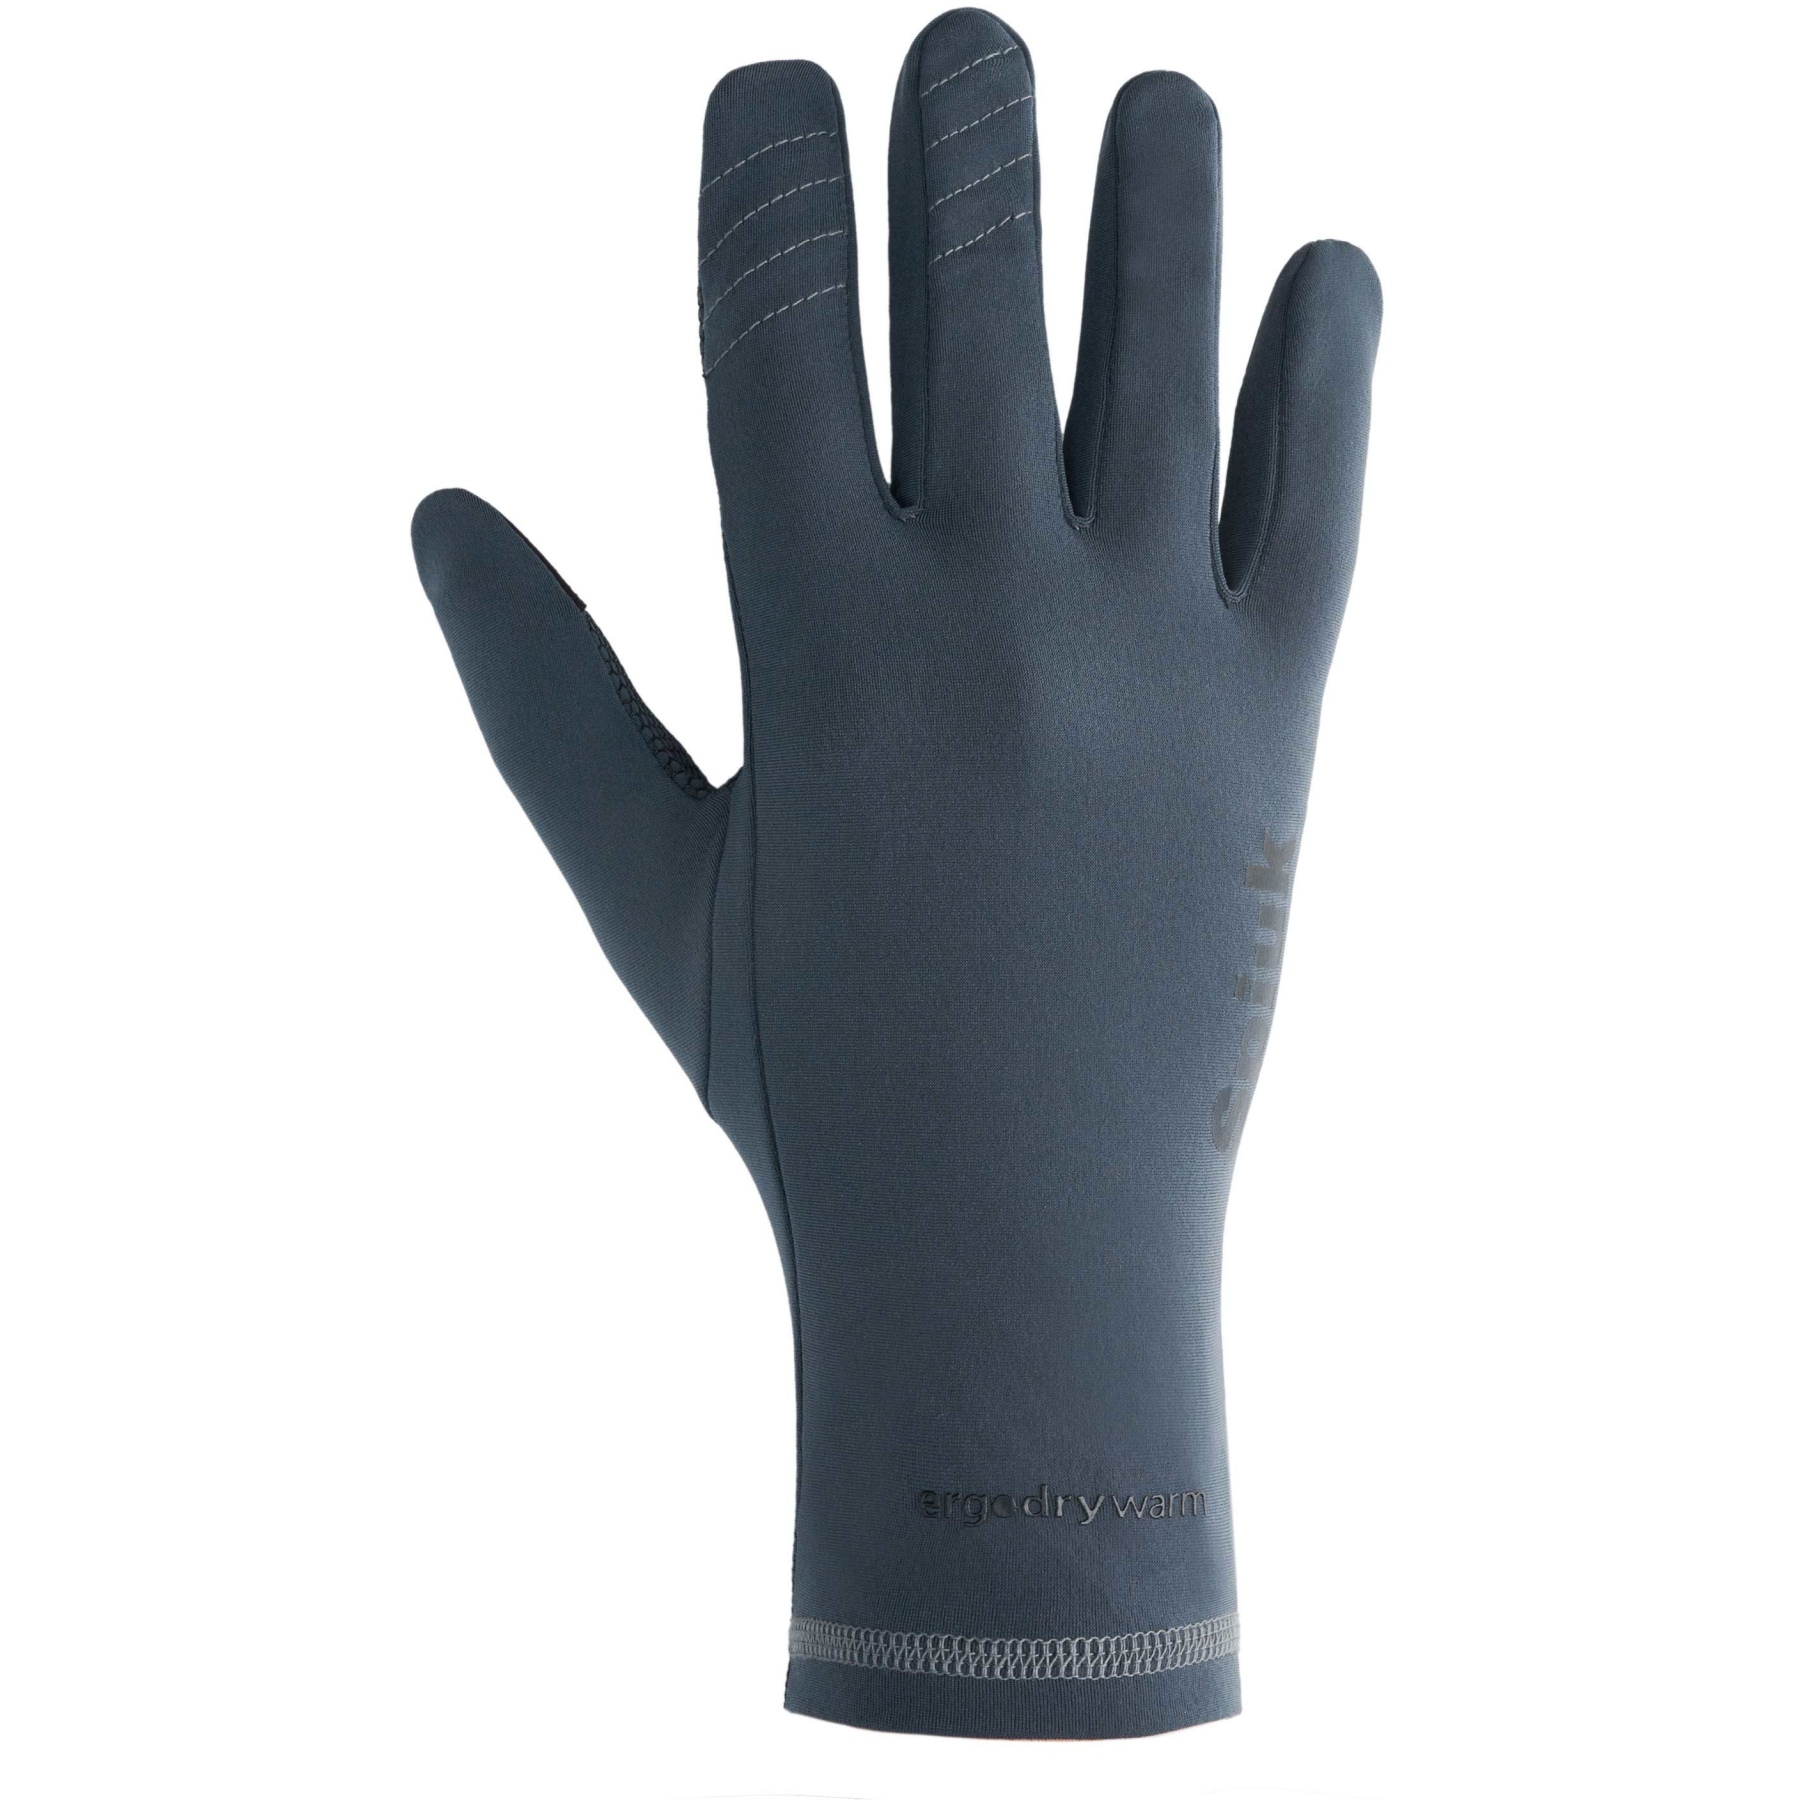 Produktbild von Spiuk ANATOMIC Thermic Handschuhe - grau